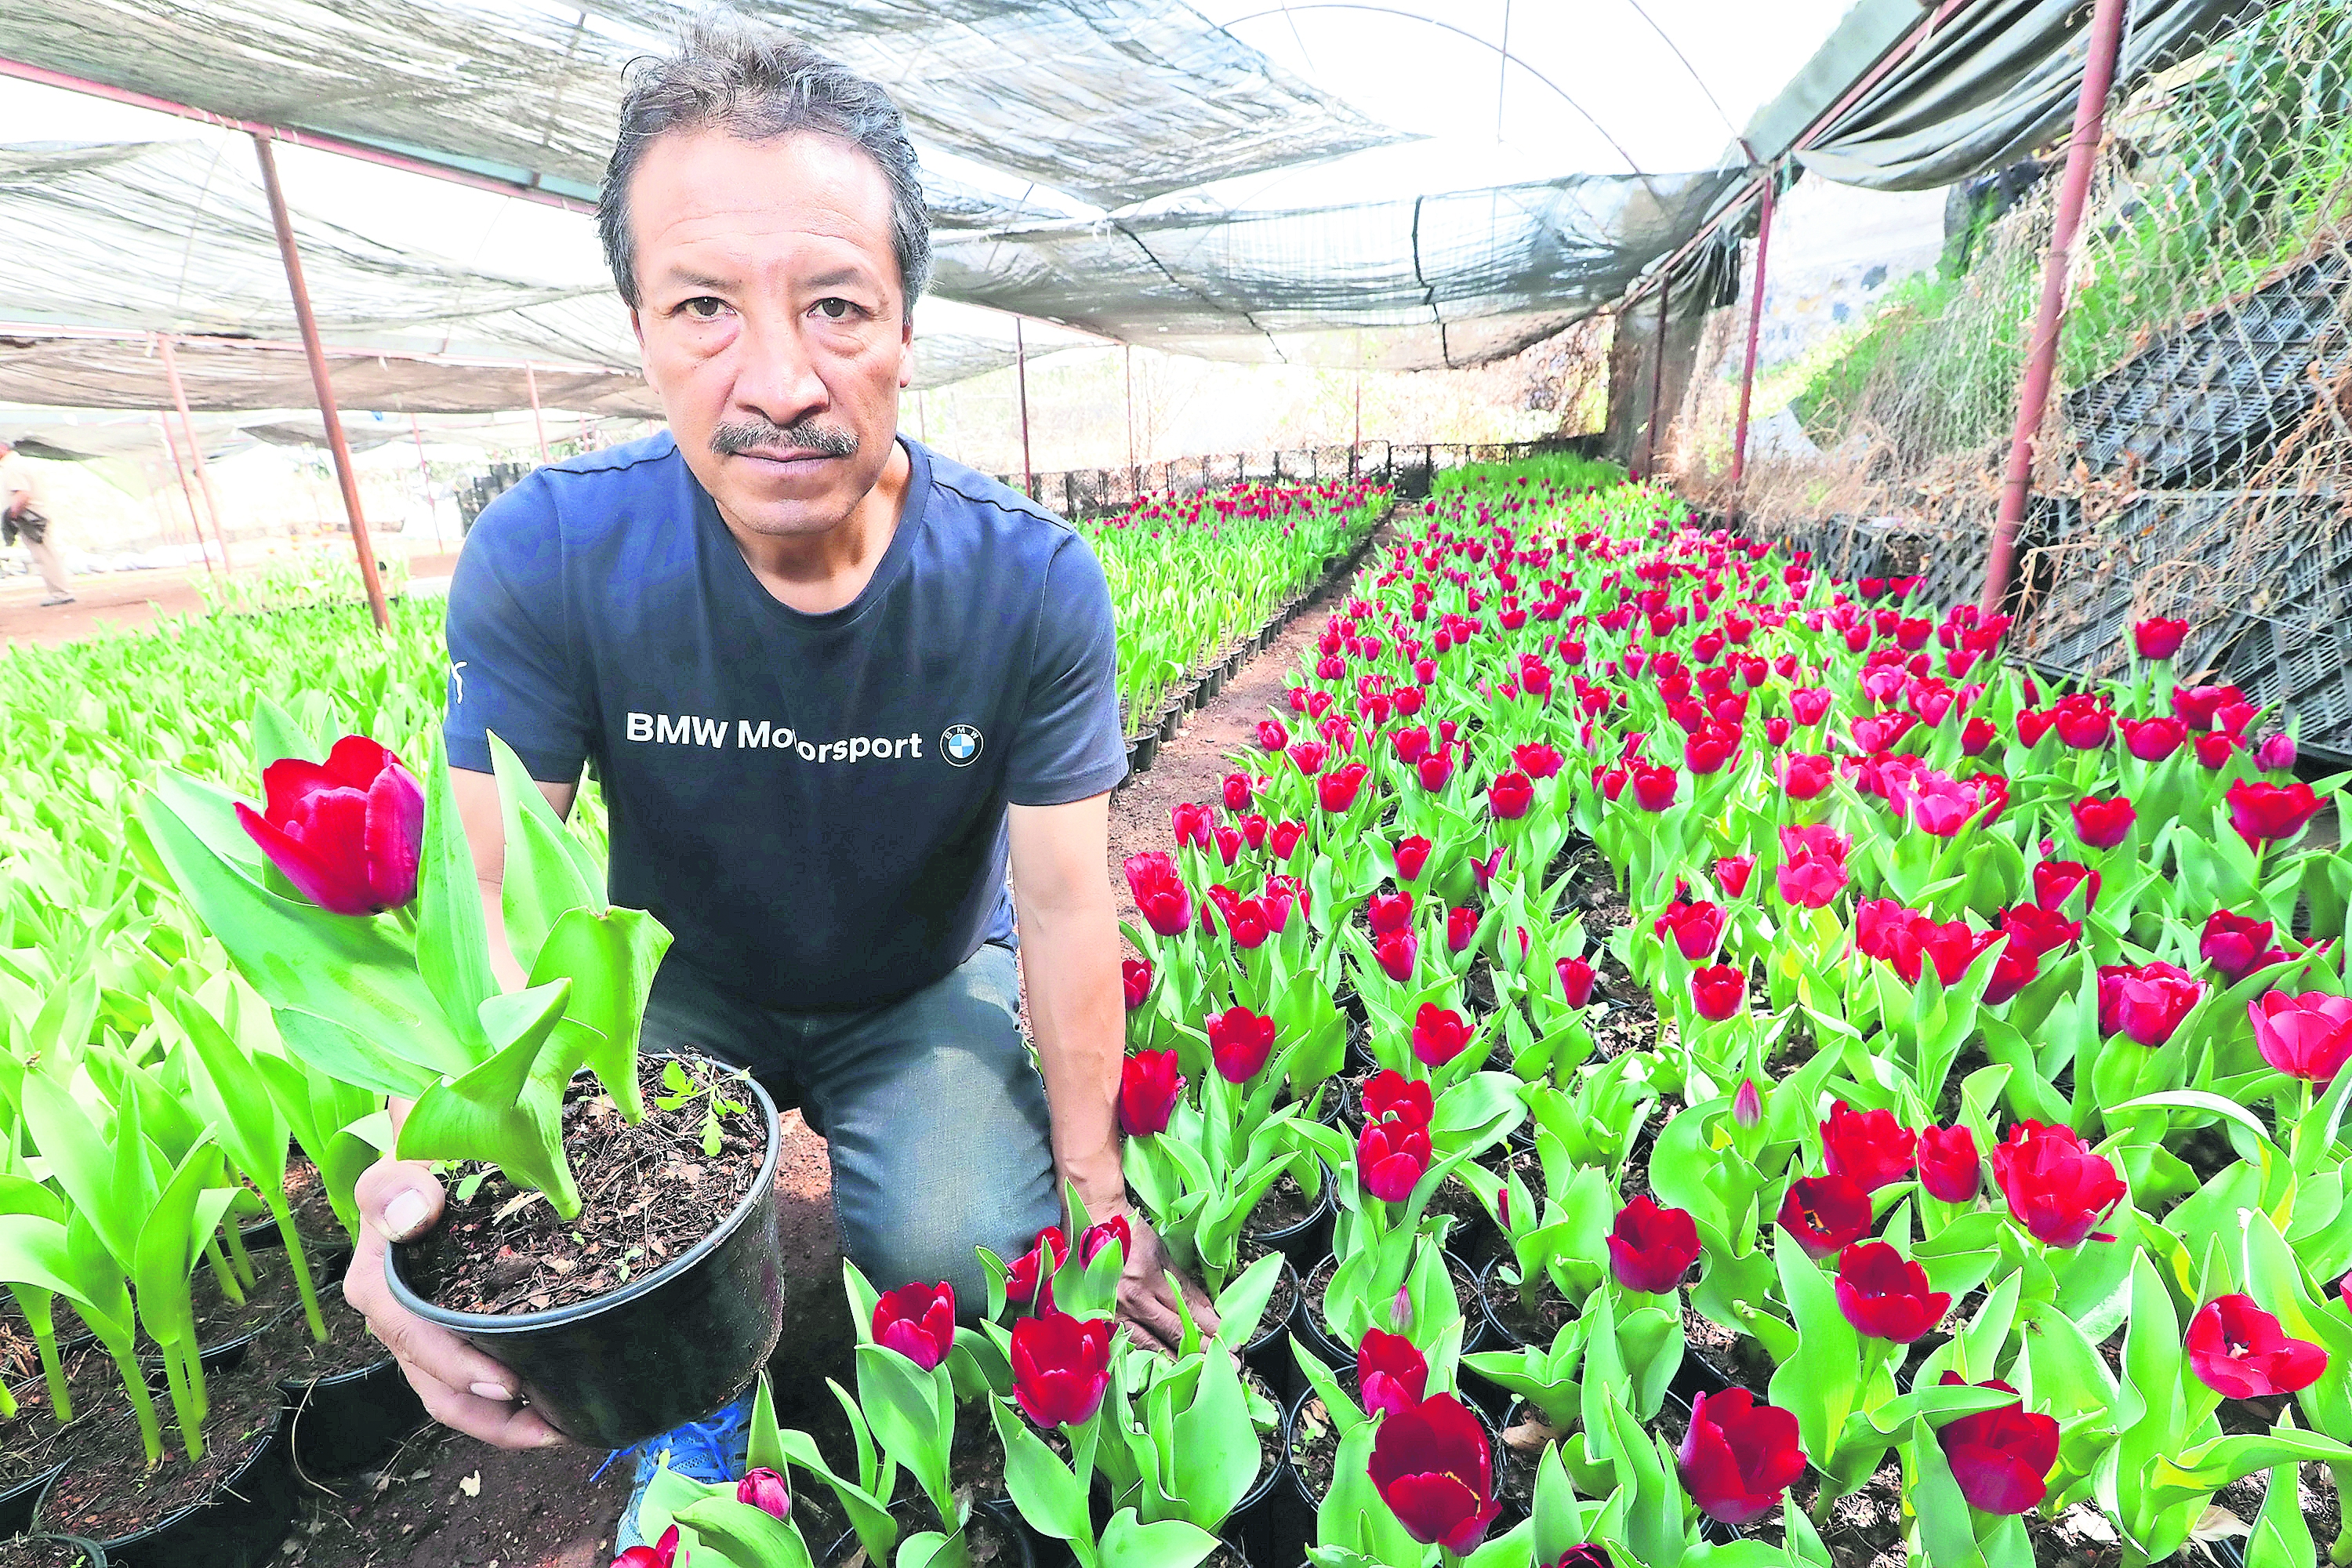 Calentamiento global afecta cultivo de tulipanes: productores